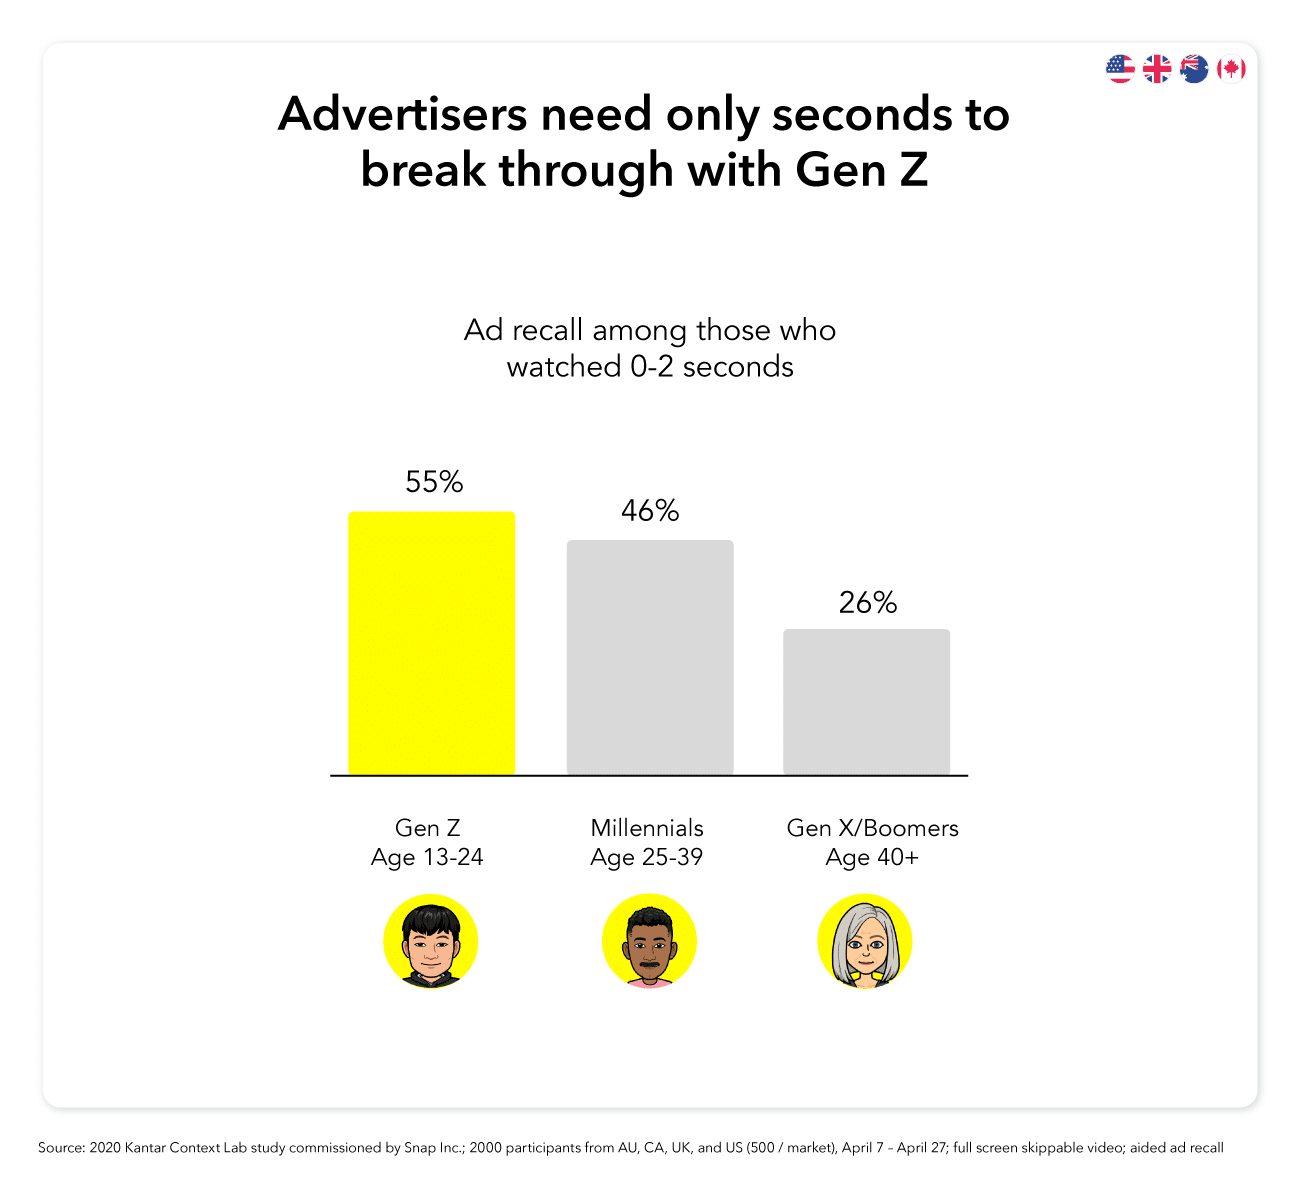 El 55% de la Generación Z recuerda el anuncio después de ver de 0 a 2 segundos de un anuncio.